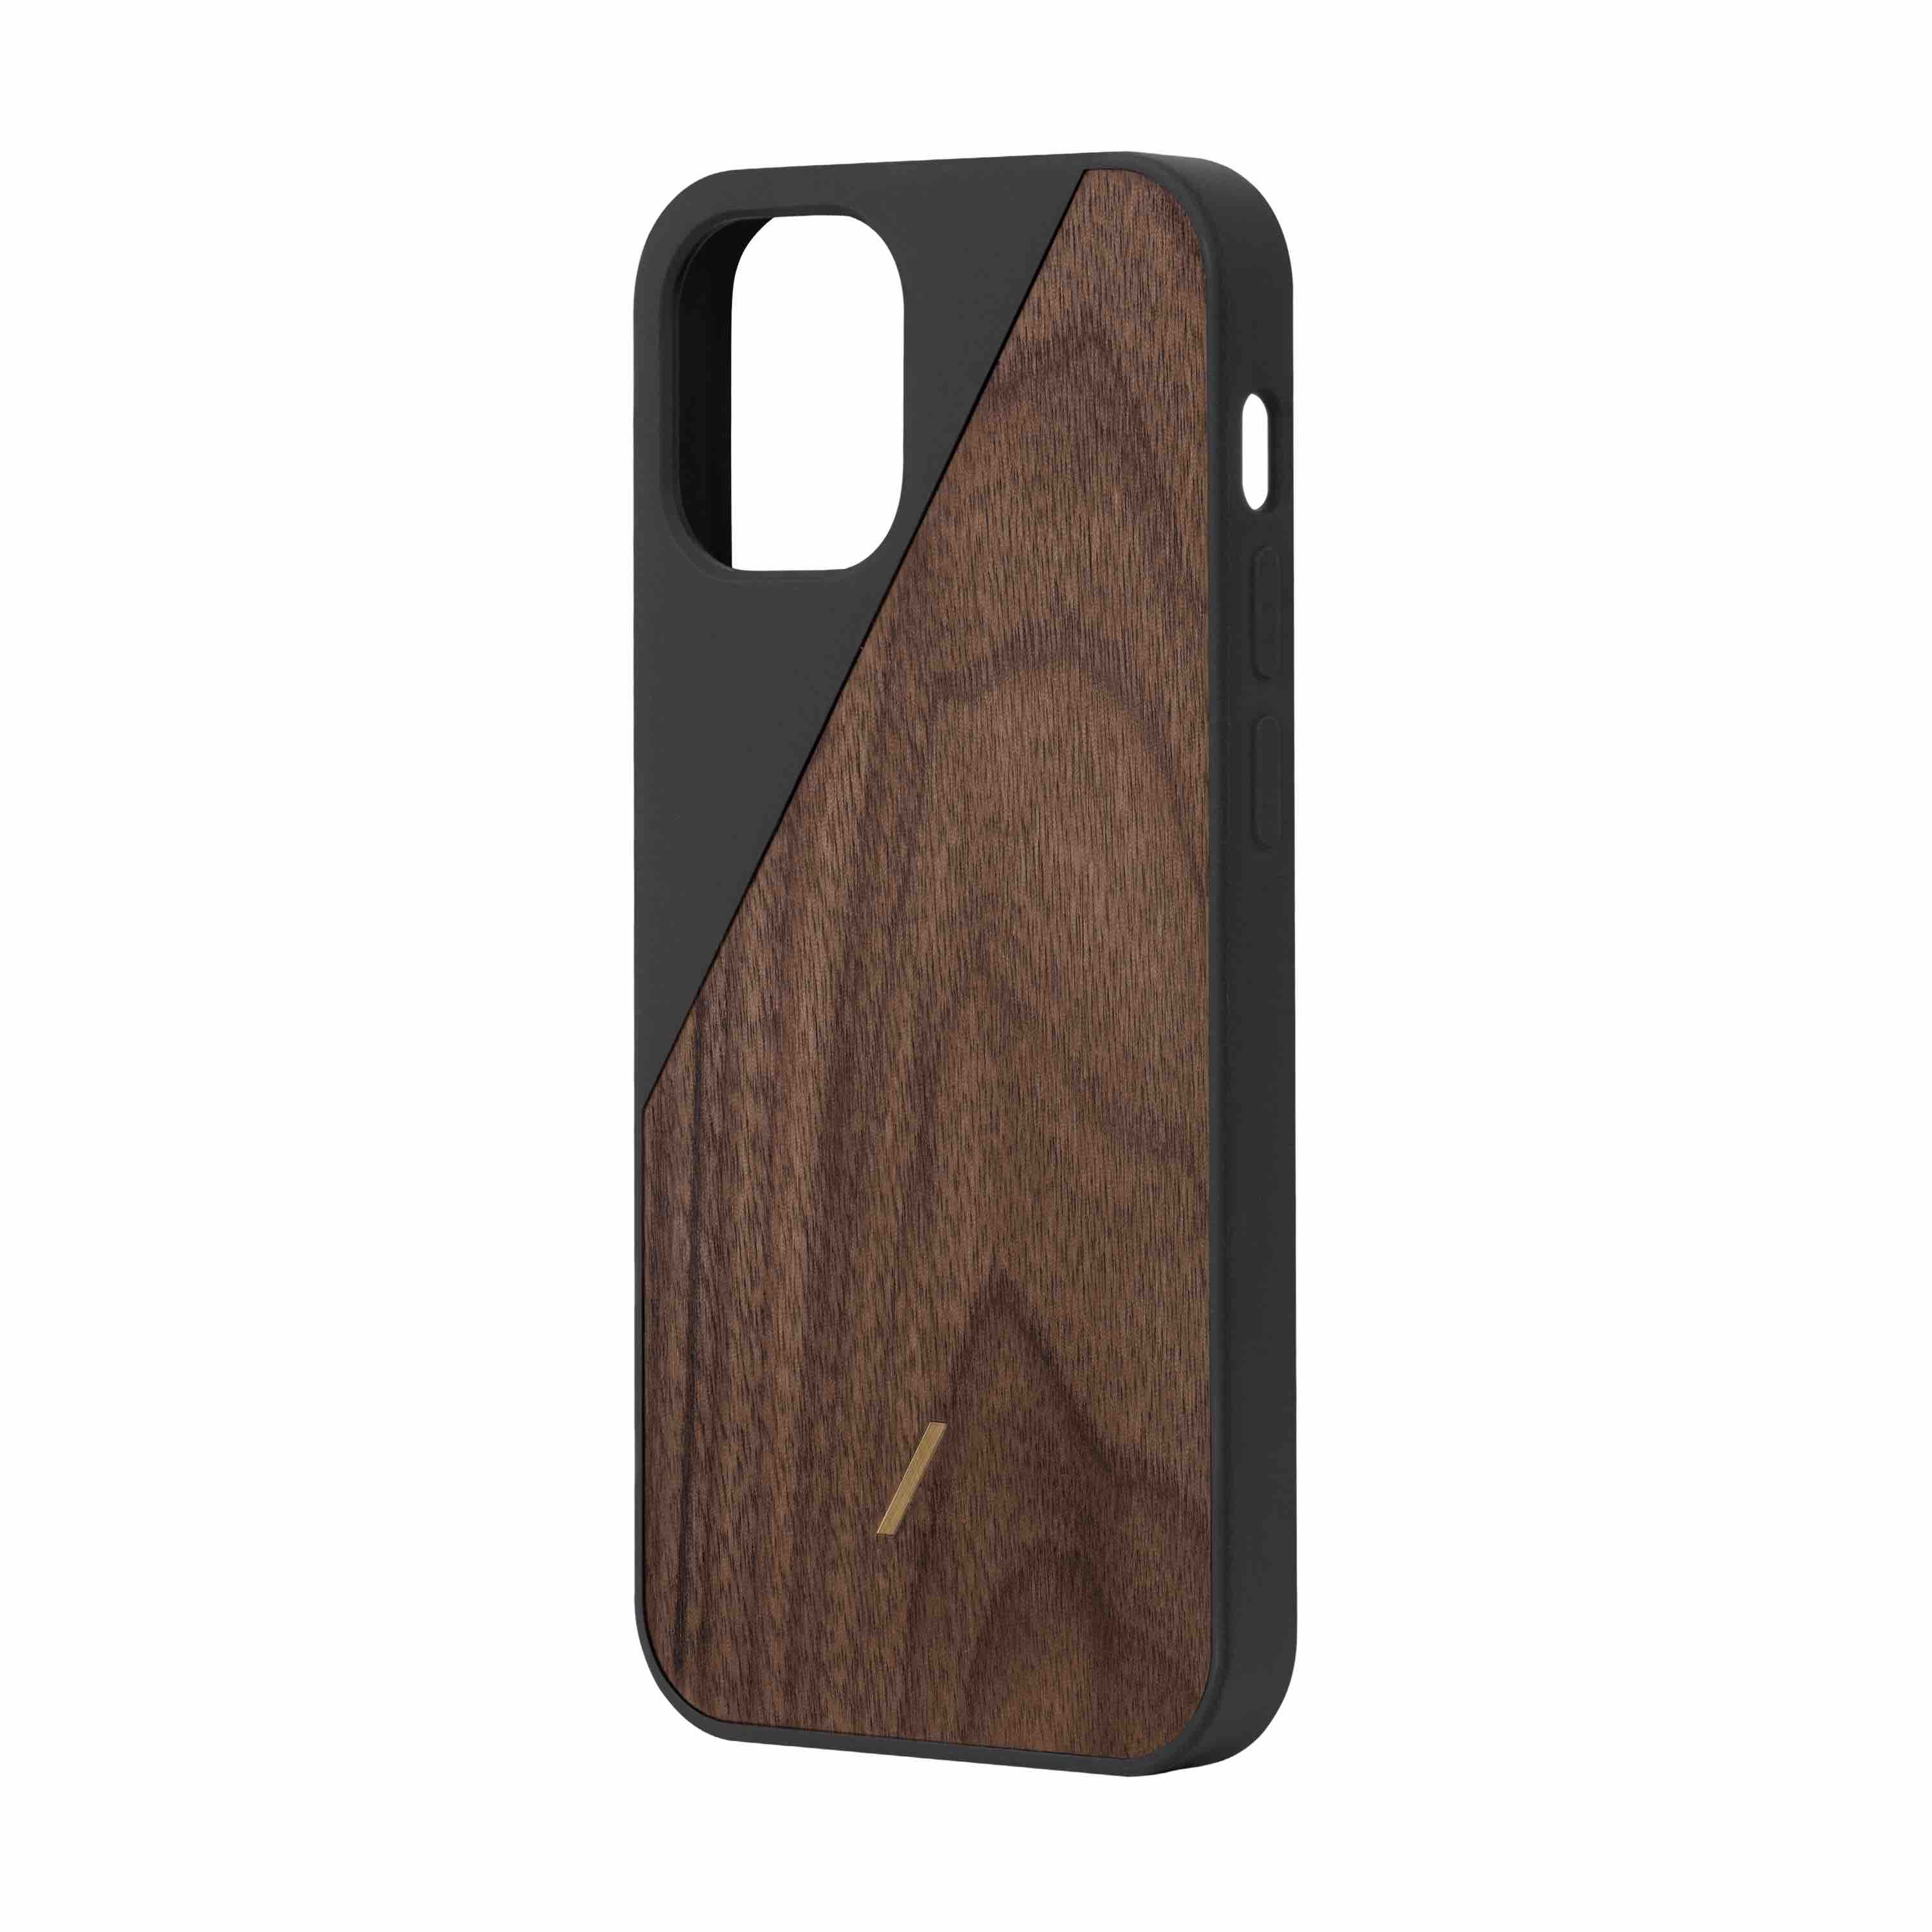 Native Union iPhone 12 mini Clic Wooden Case